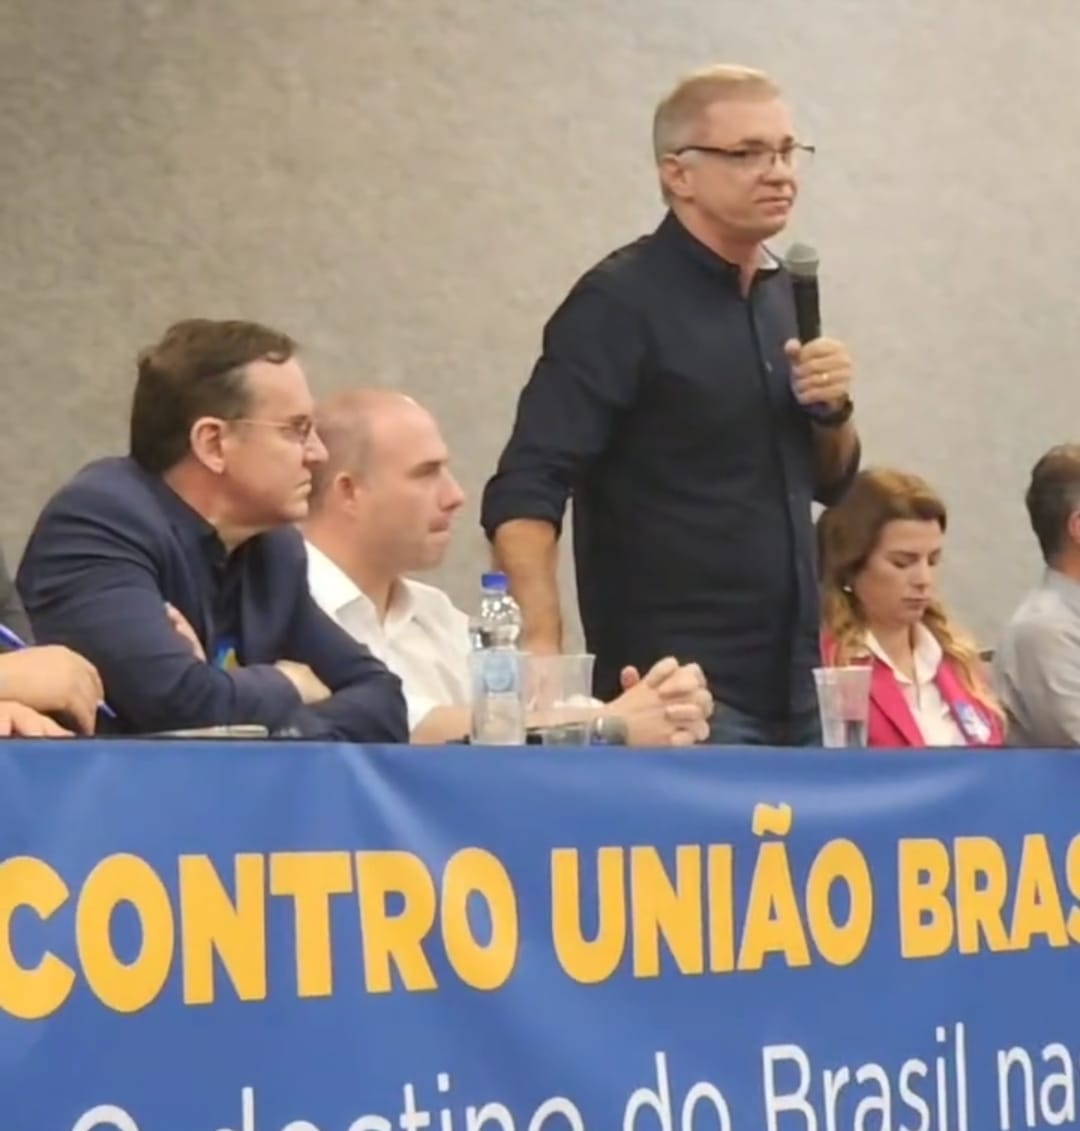 Semana decisiva para Gean e o União Brasil; Filho de deputado é condenado por estupro; Cobalchini assumirá o comando do MDB, entre outros destaques